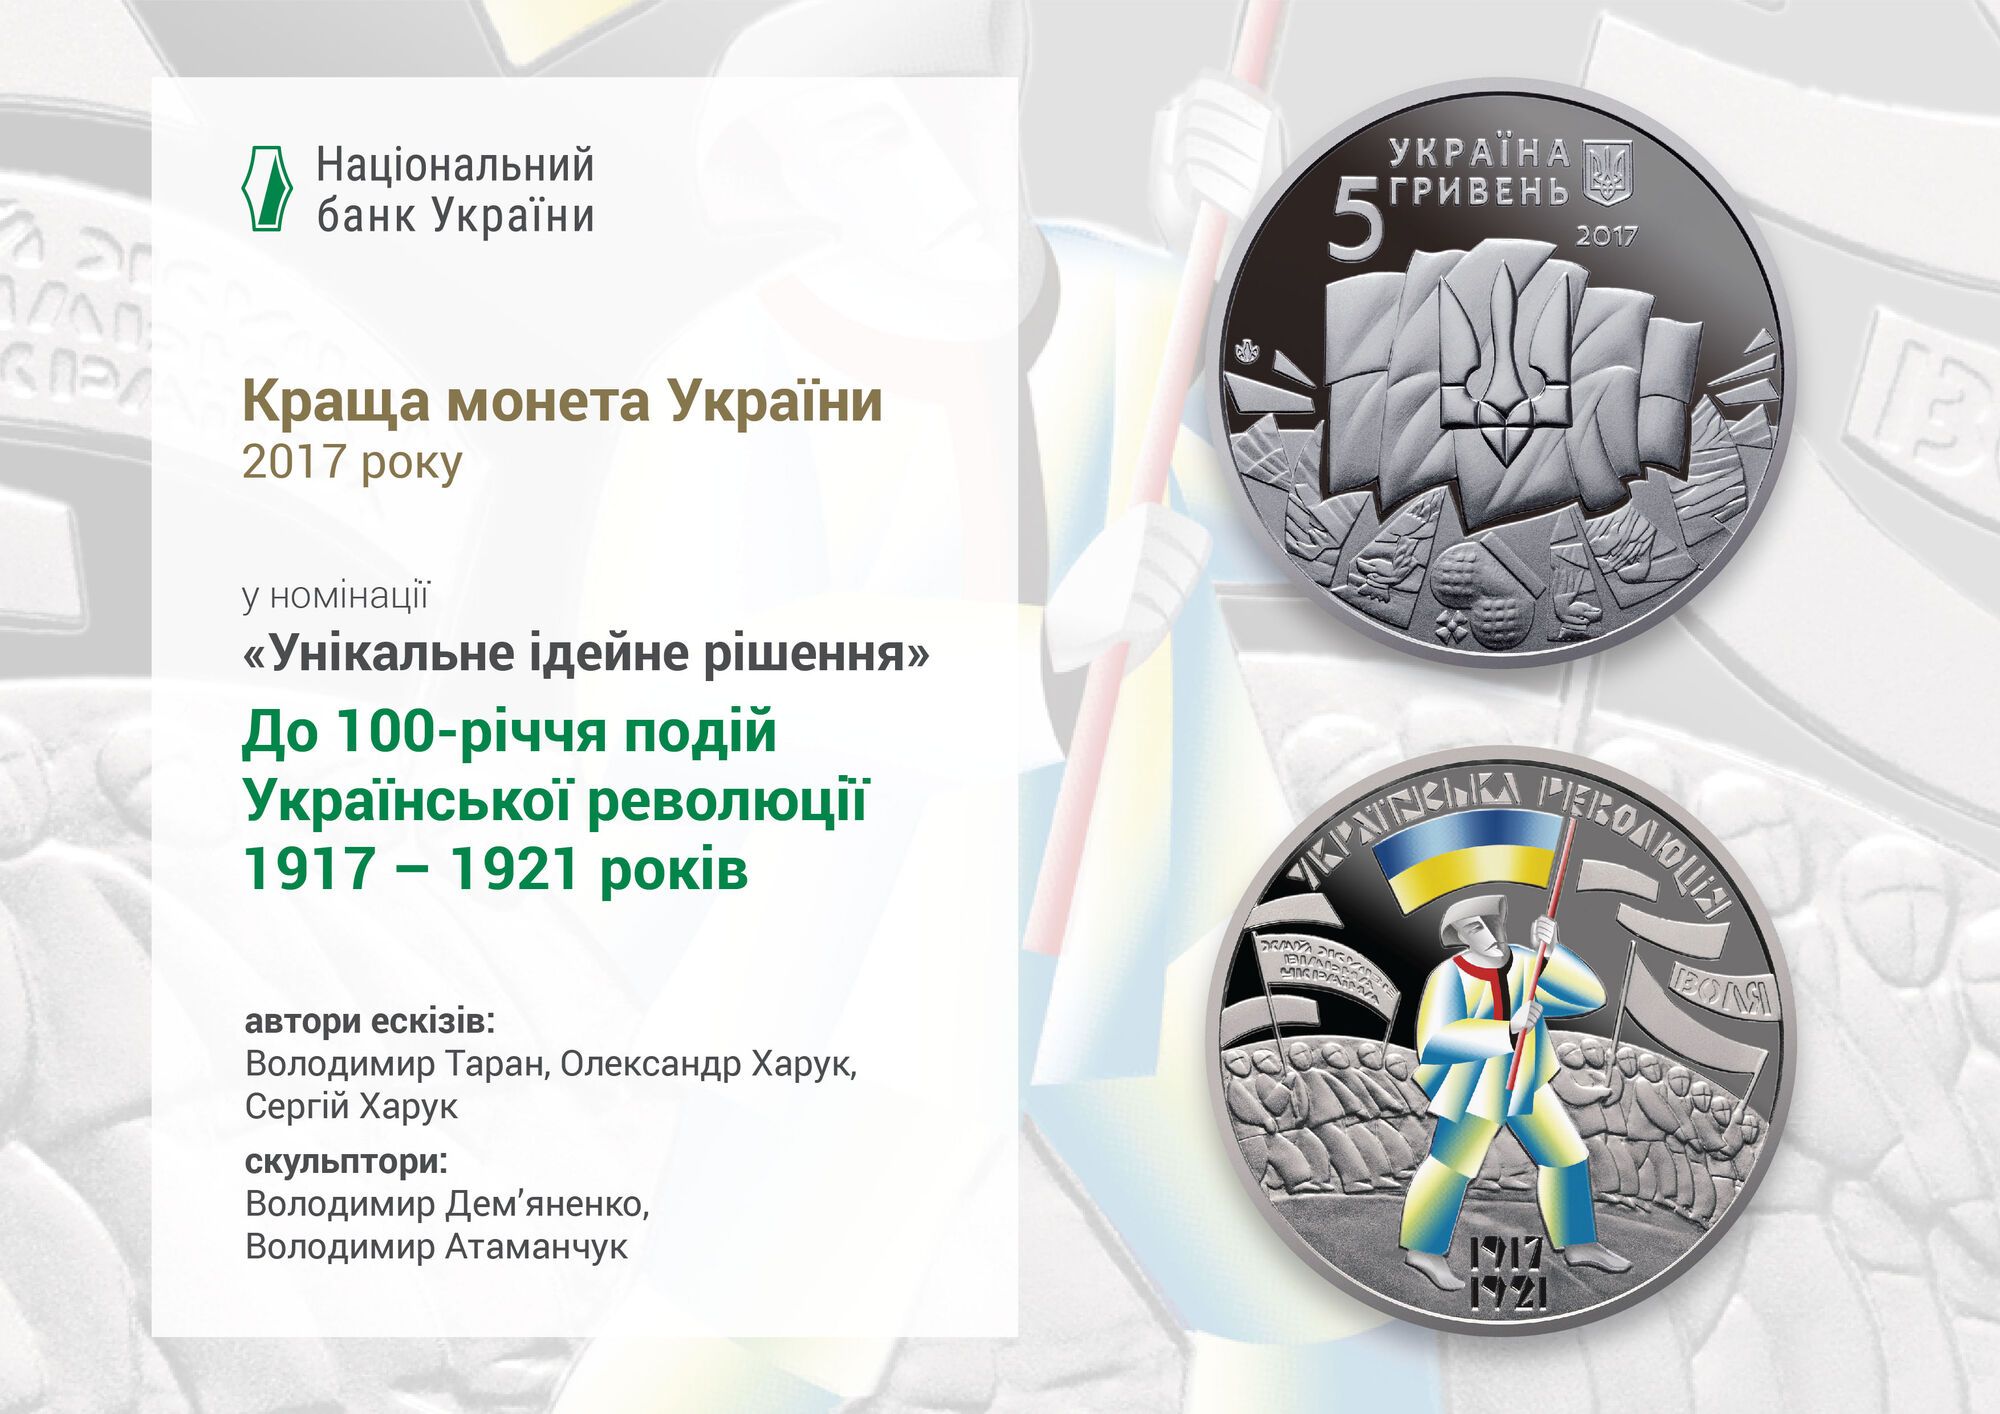 "Революция и колесо жизни": НБУ показал лучшие памятные монеты Украины